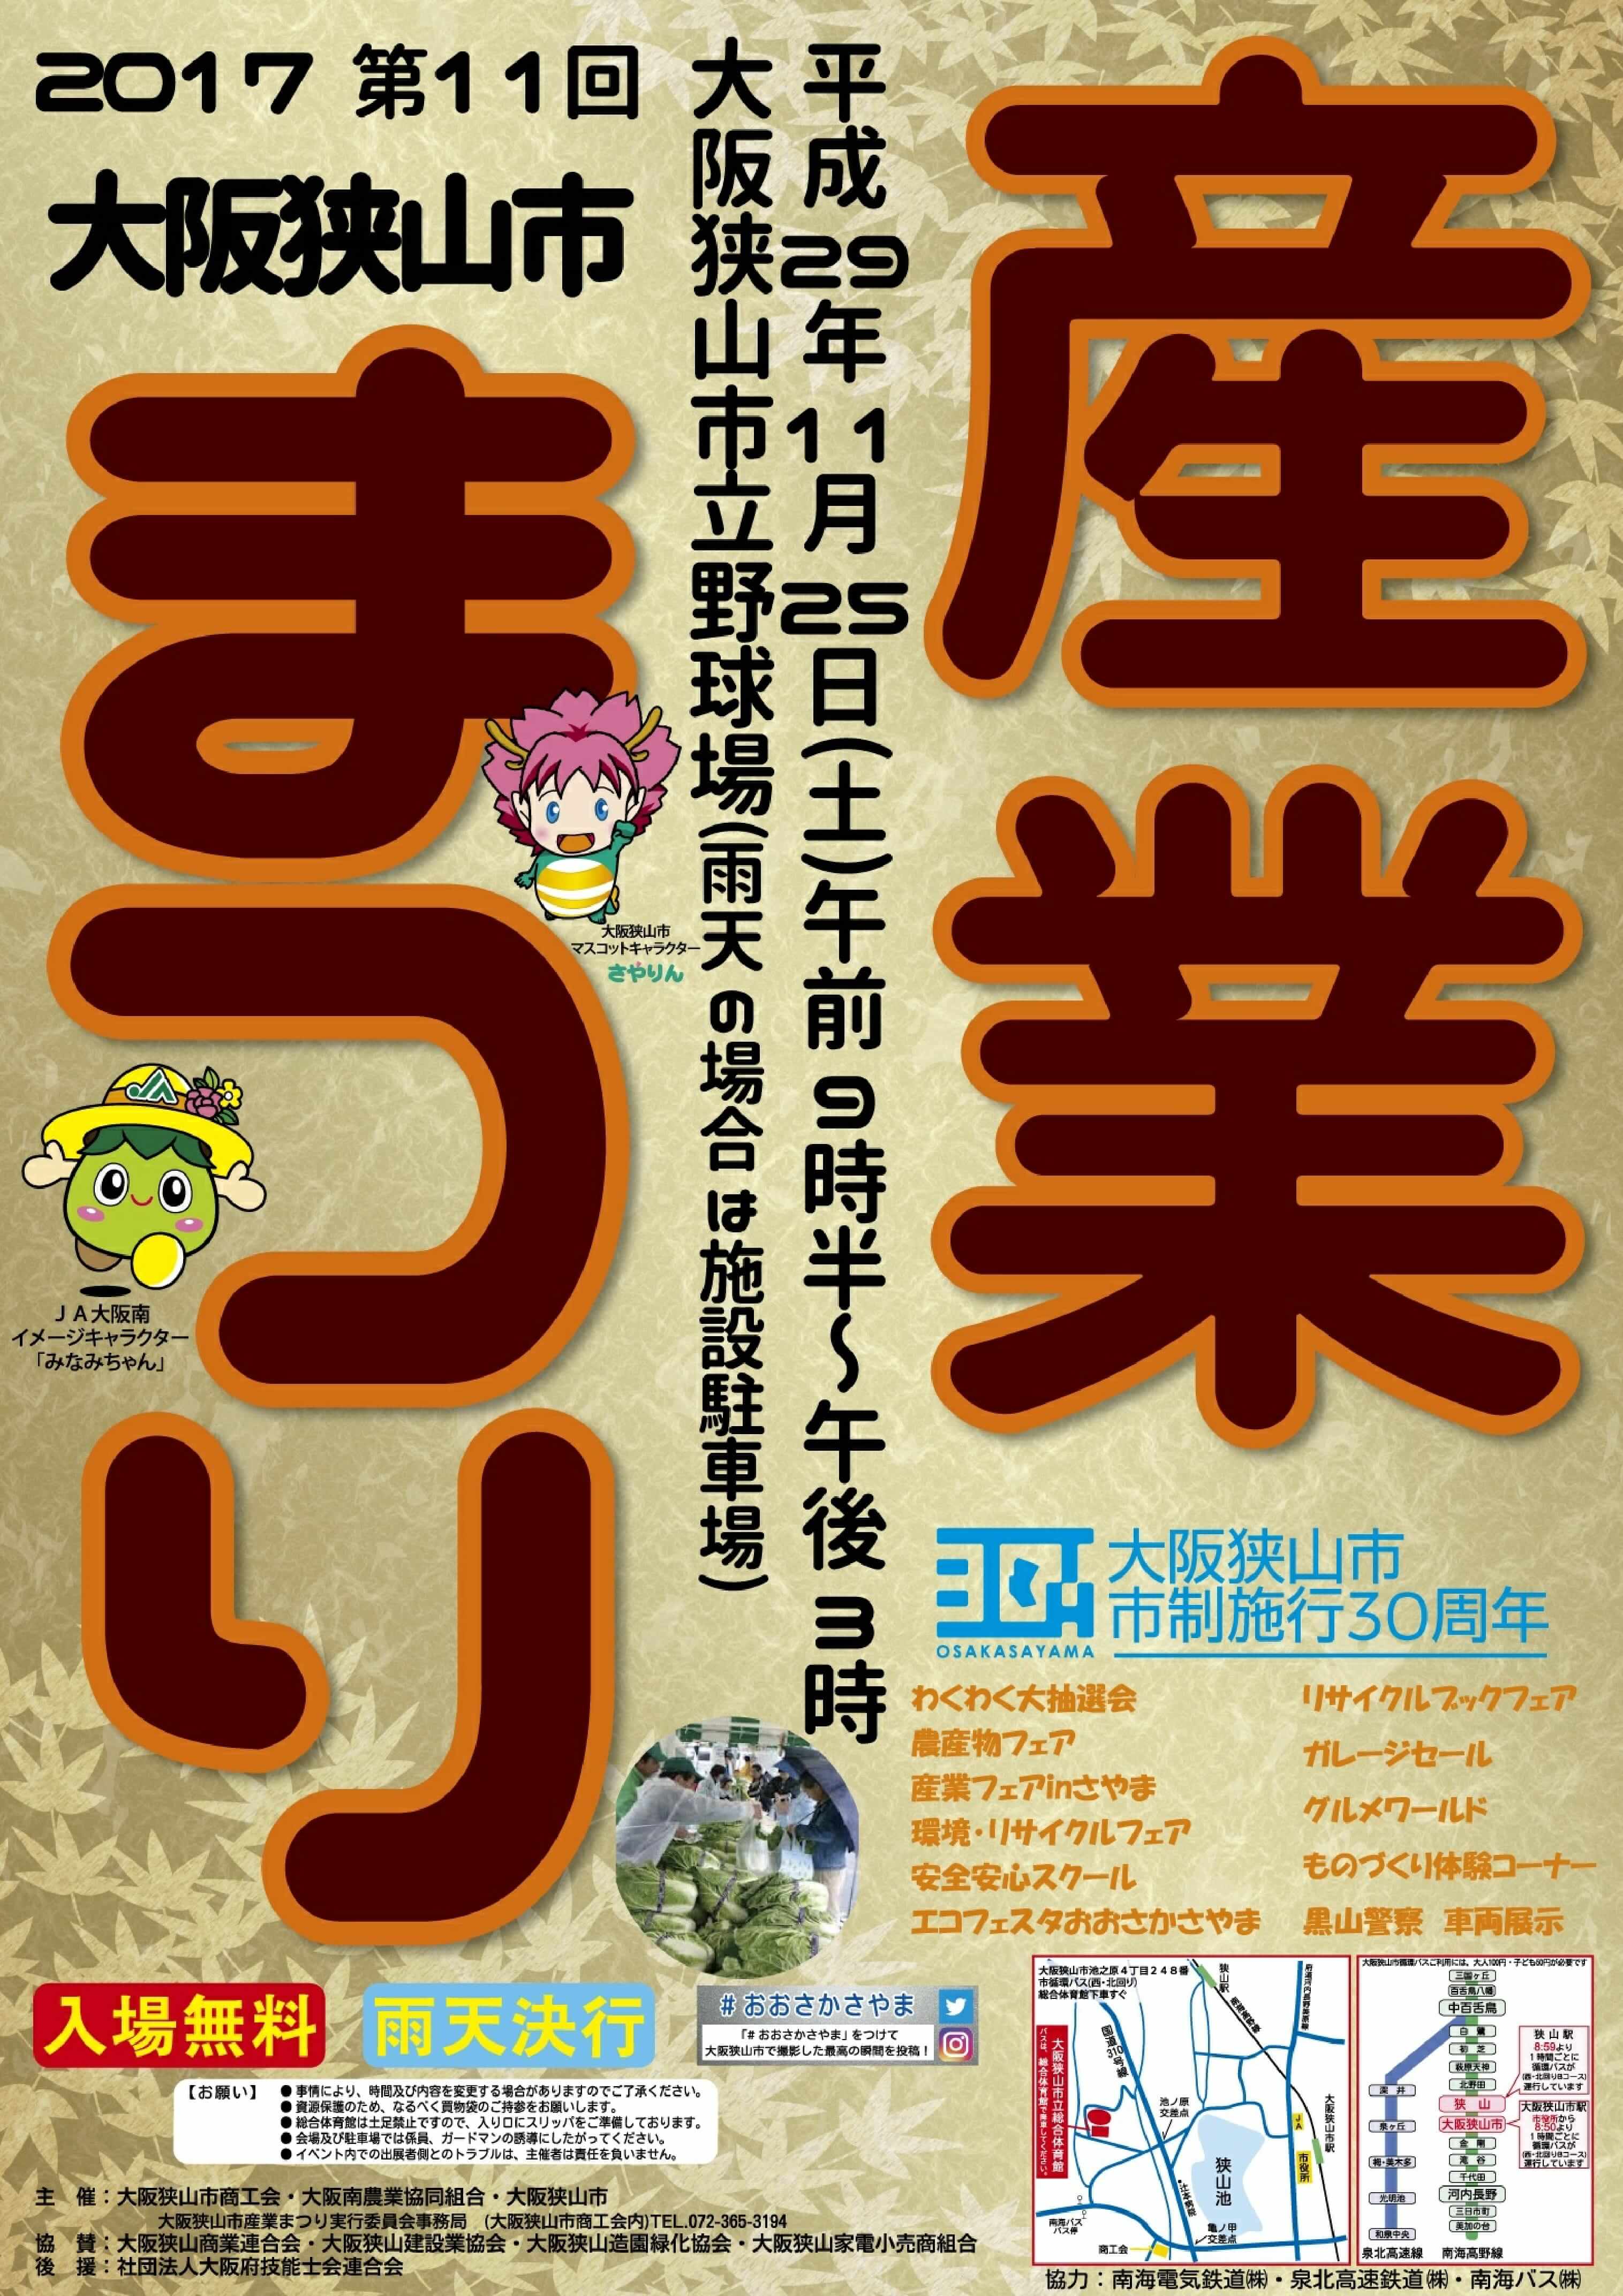 「第11回大阪狭山市産業まつり」が2017年11月25日に大阪狭山市立野球場で開催